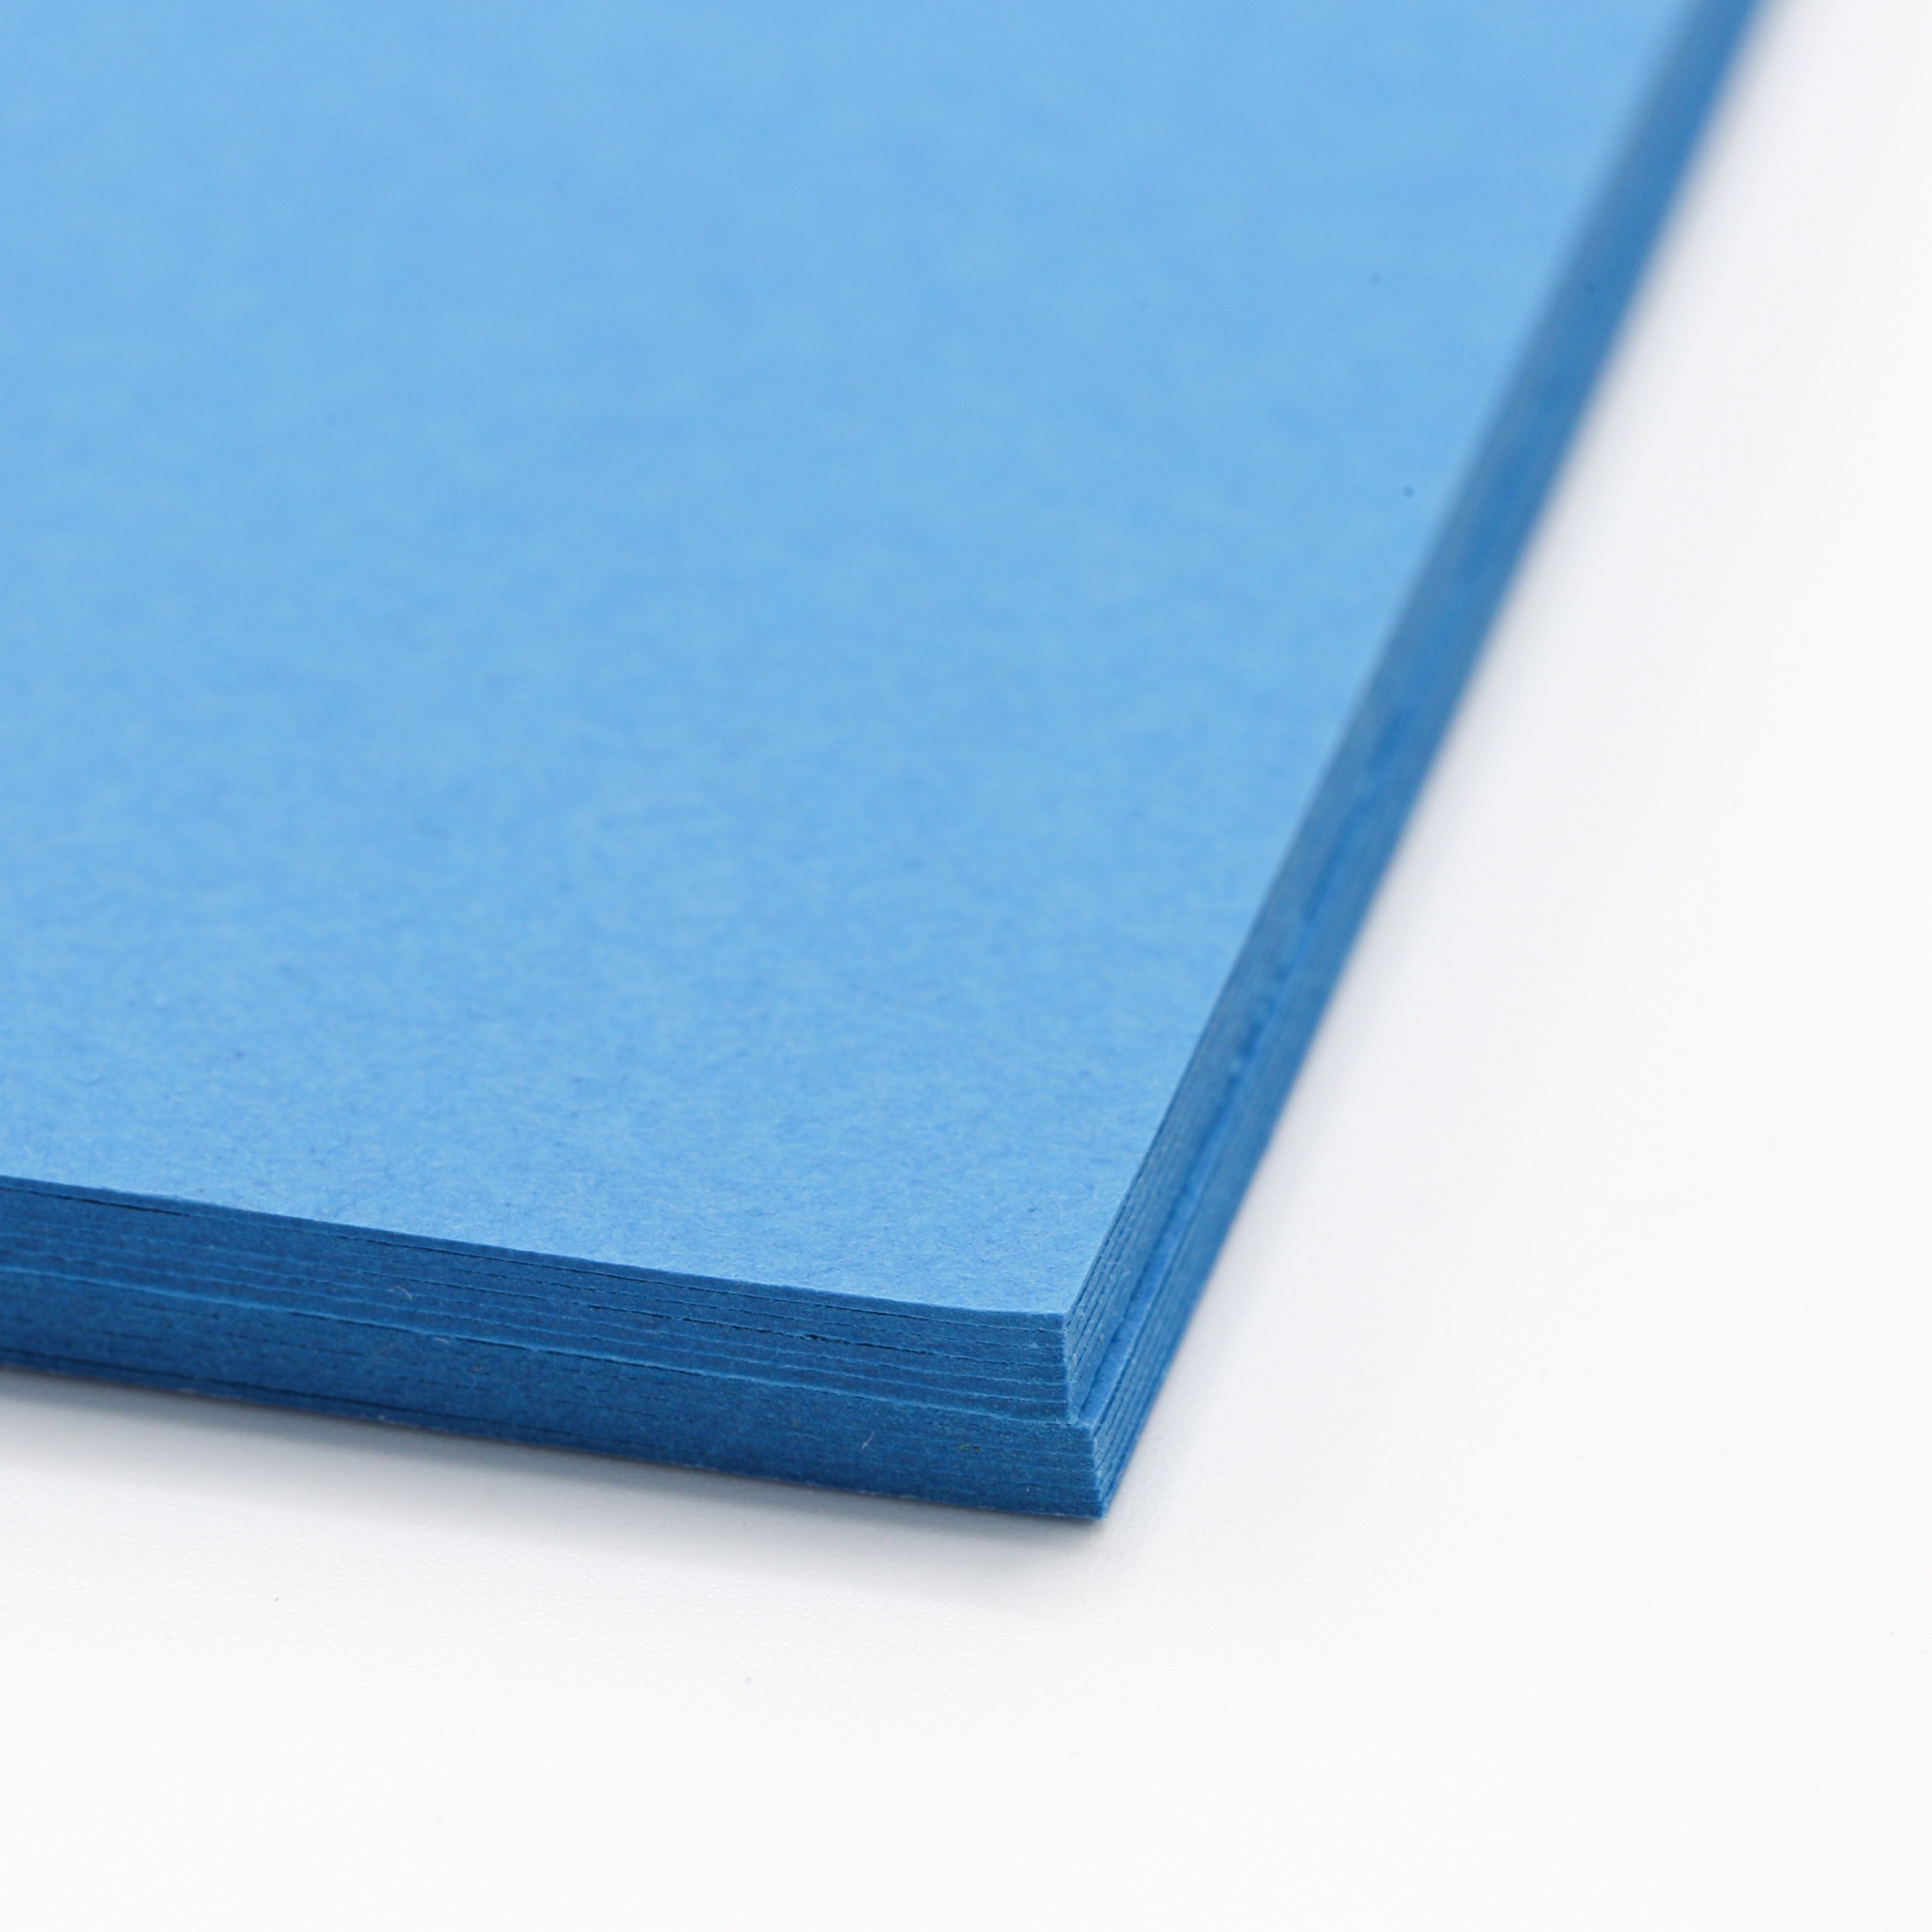 25X6 Textured Blue Cardboard Sheet